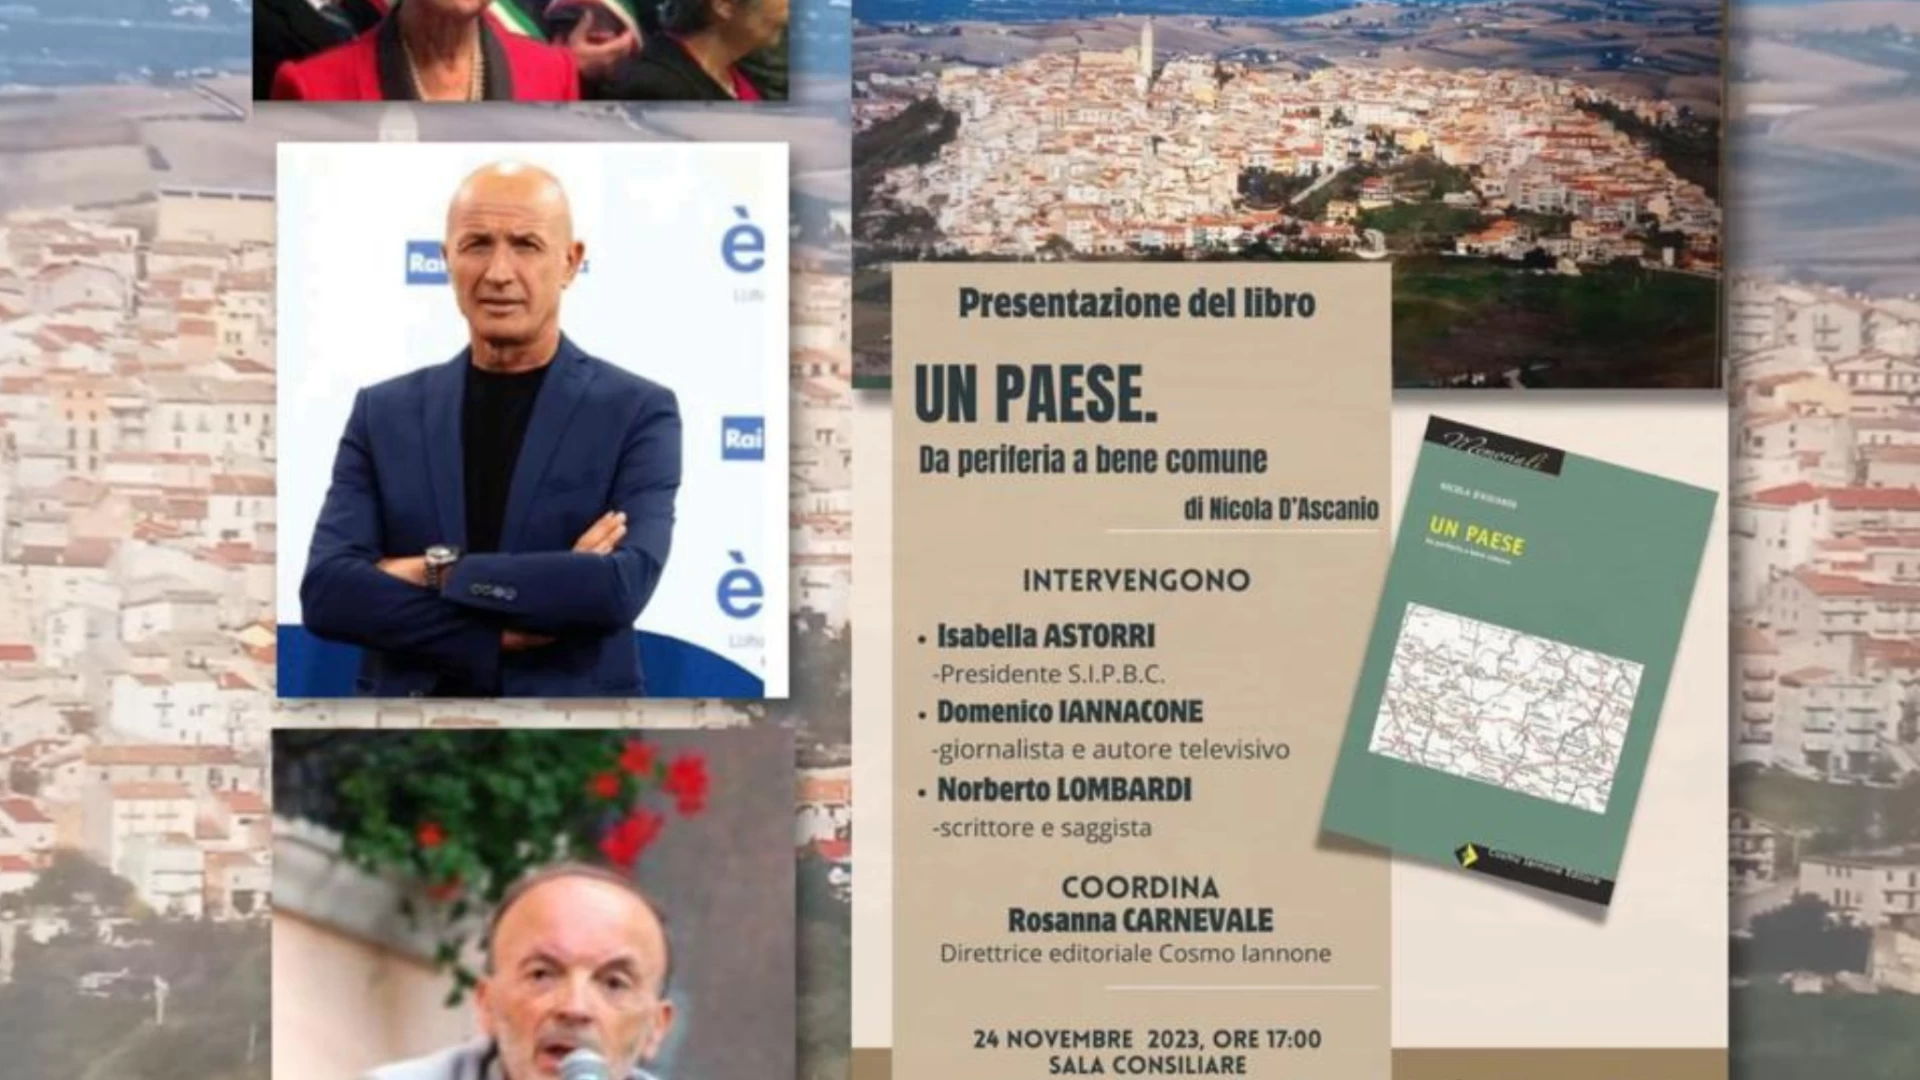 “Un paese. Da periferia a bene comune”, venerdì a Montenero si presenta il libro-memoriale di Nicola D’Ascanio